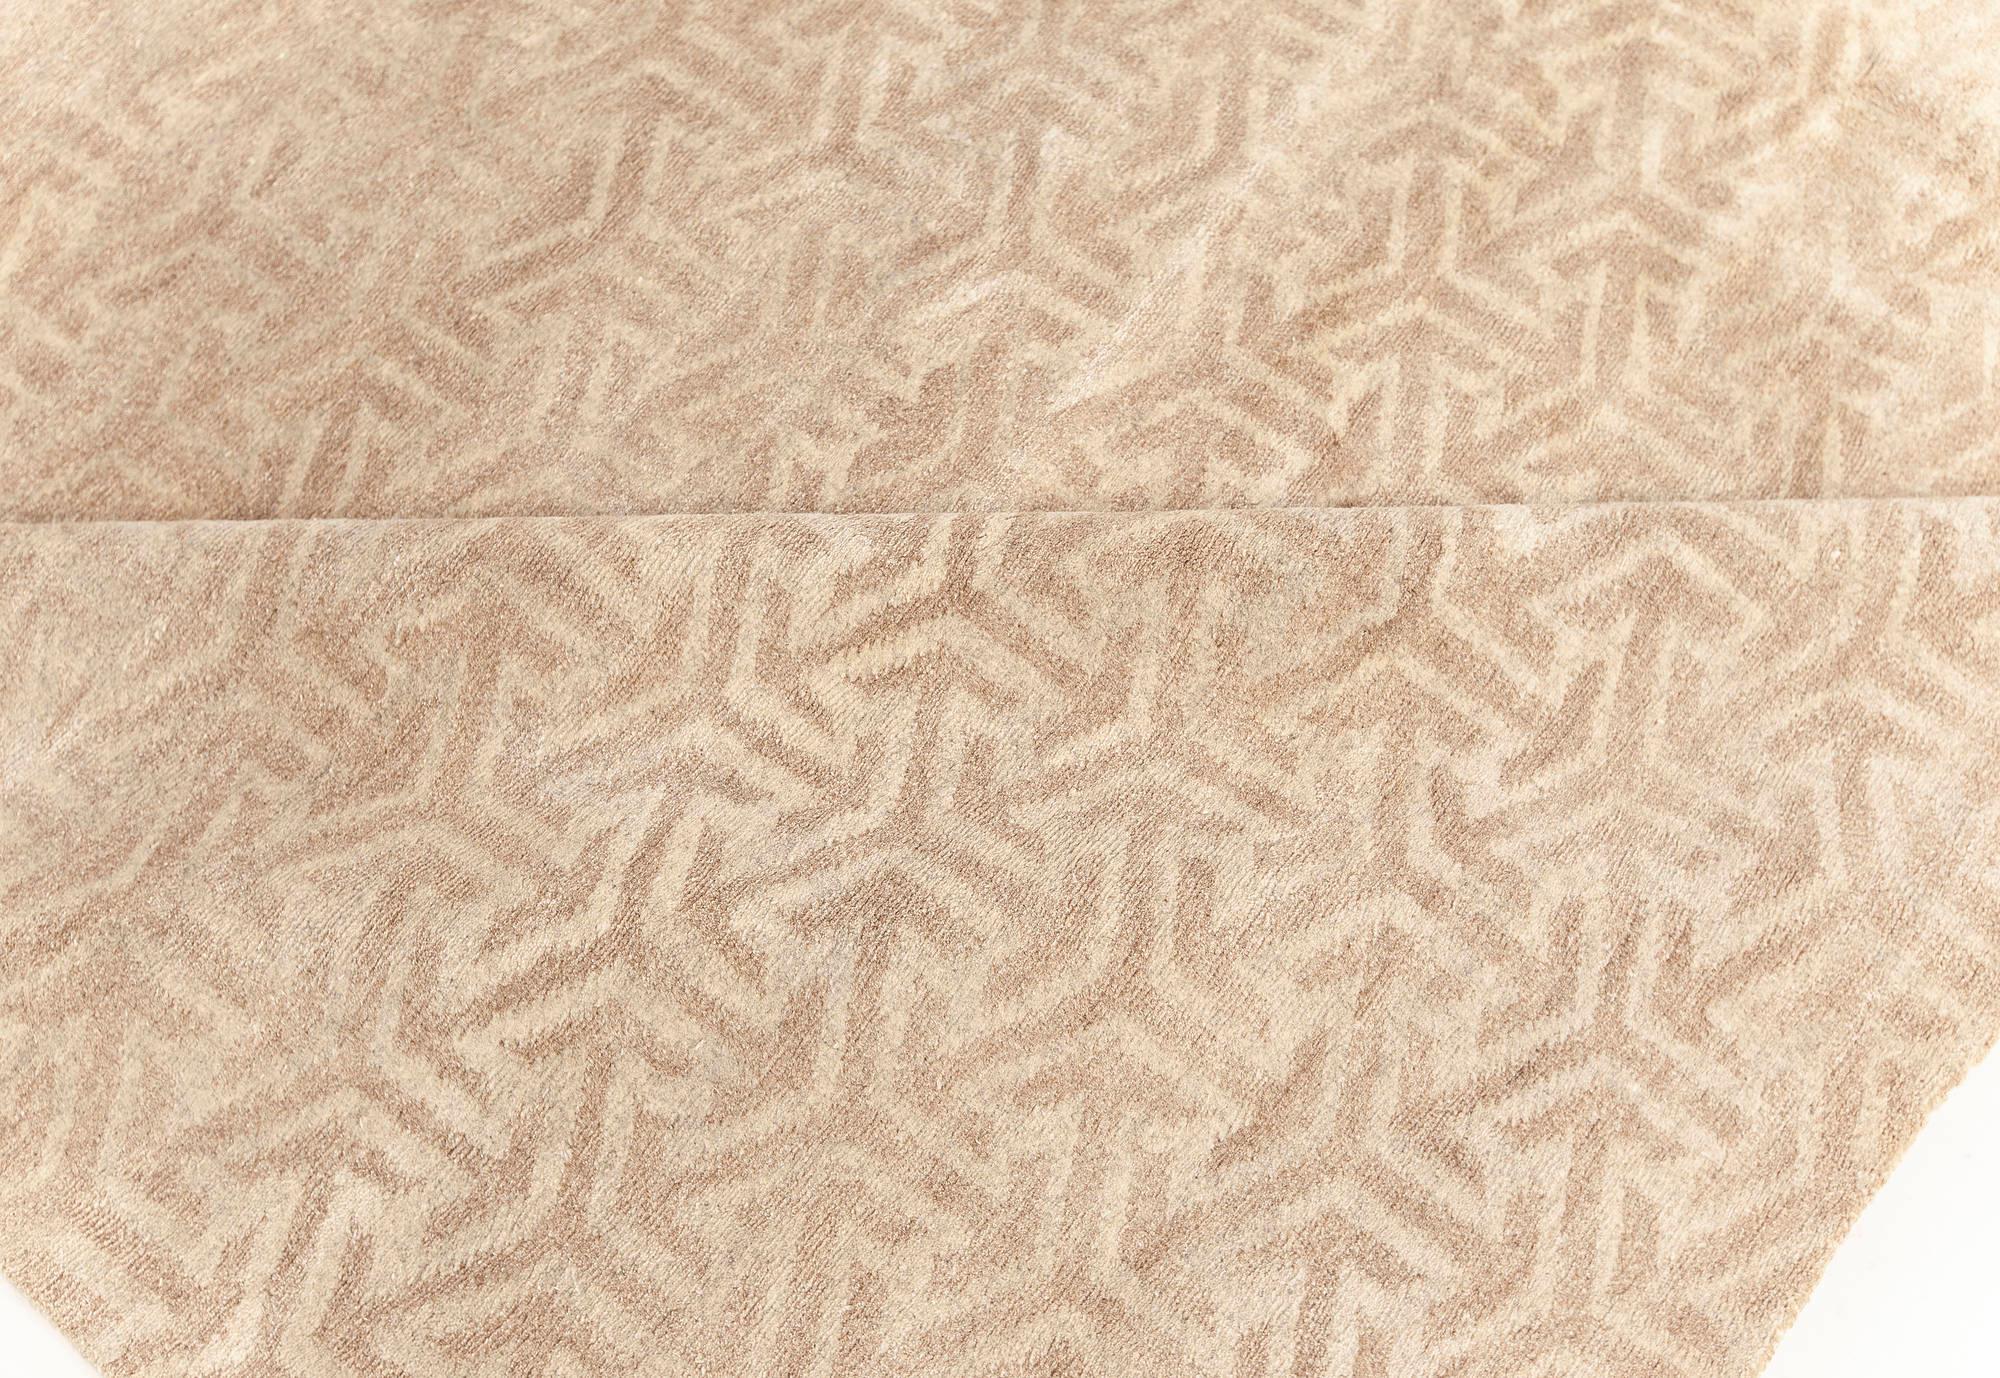 Zeitgenössischer Terra Beige-Teppich aus natürlicher Wolle von Doris Leslie Blau.
Größe: 12'0